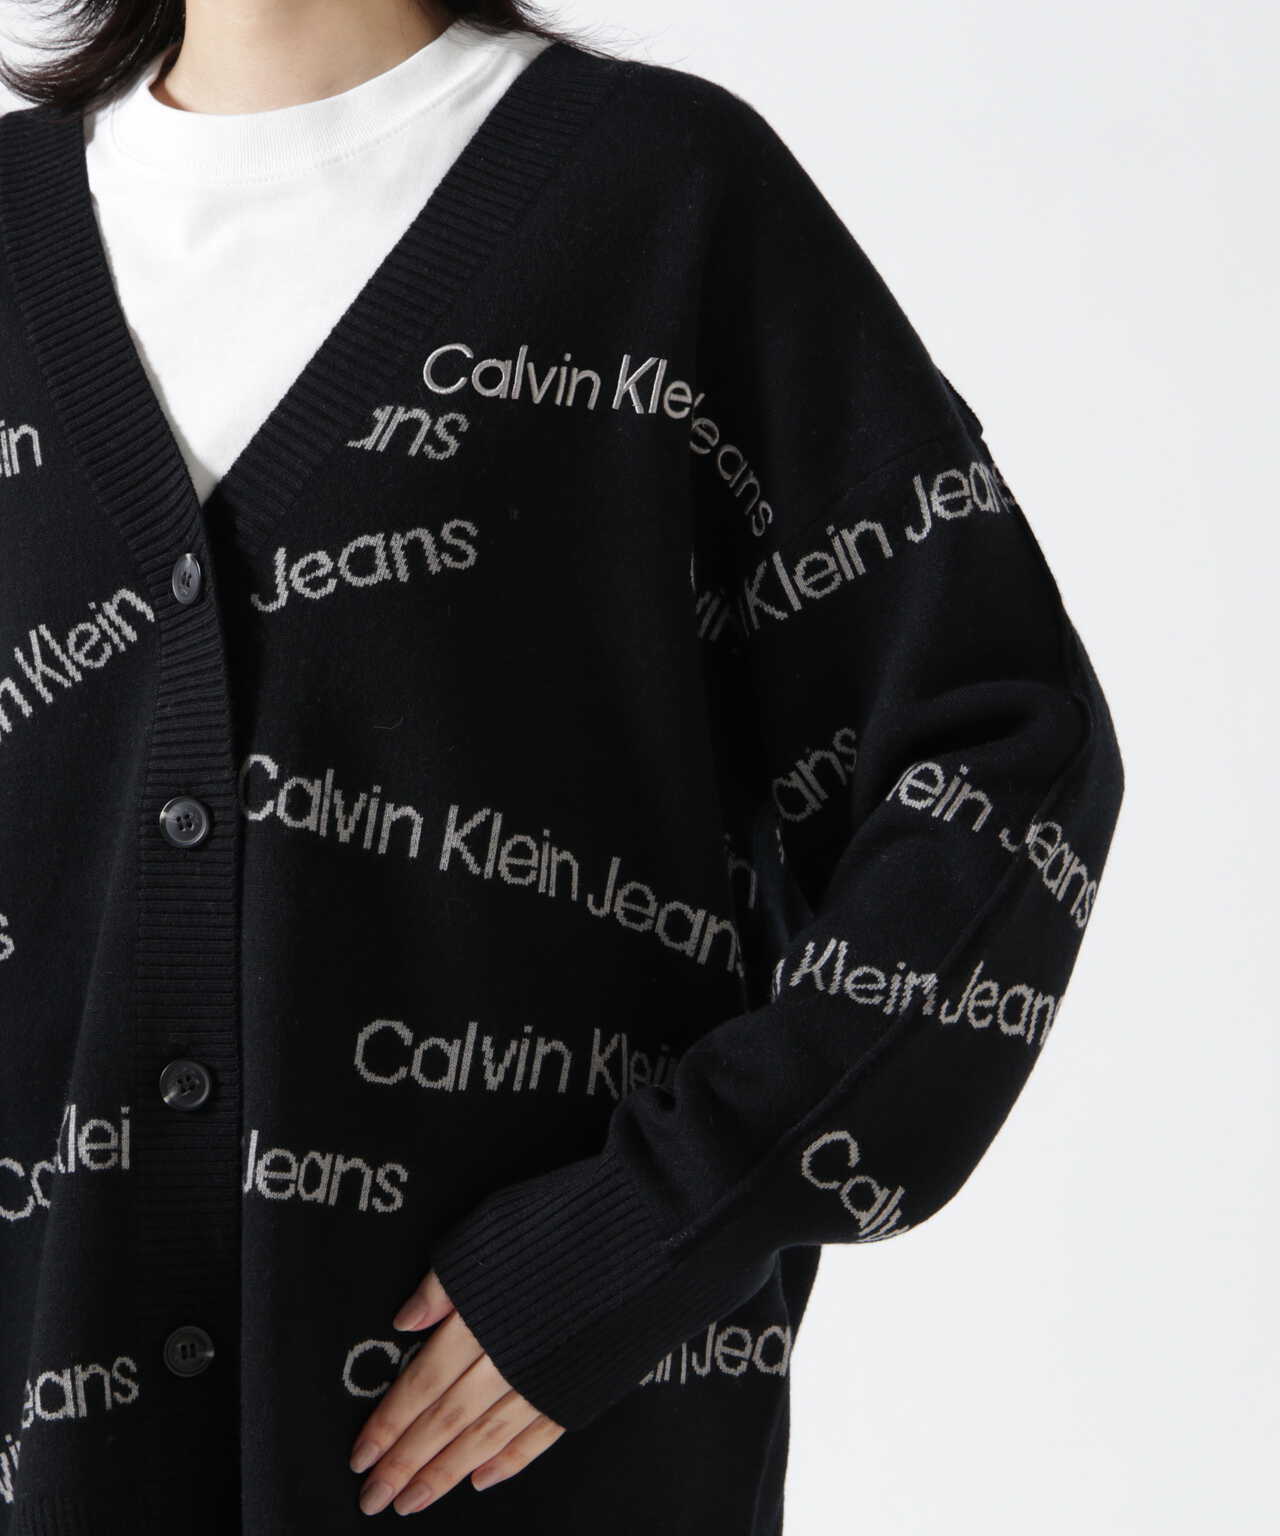 Calvin Klein Jeans（カルバンクラインジーンズ）オールオーバーロゴ